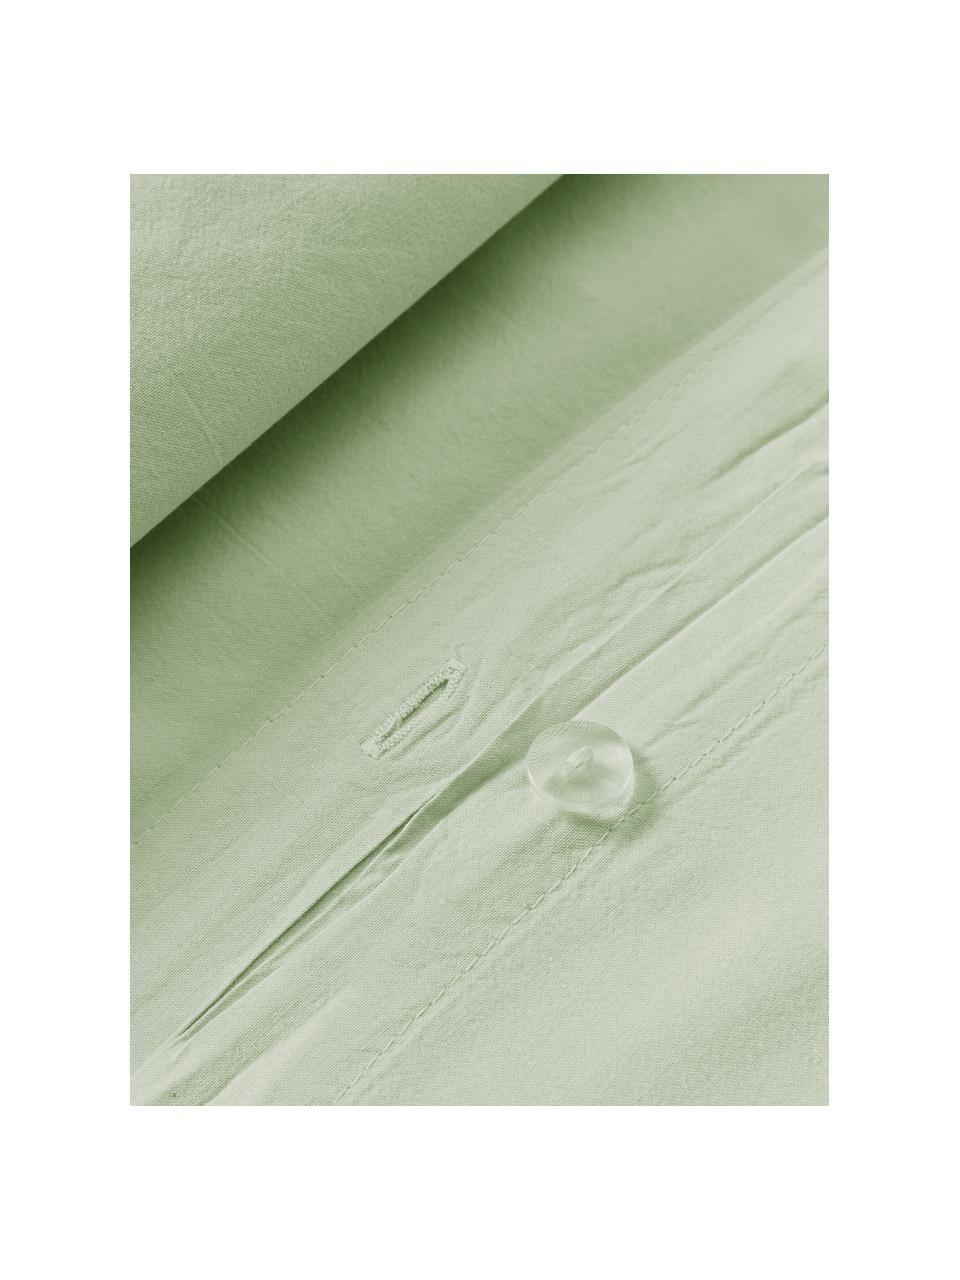 Gewaschener Baumwoll-Kopfkissenbezug Darlyn, 100 % Baumwolle
Fadendichte 150 TC, Standard Qualität

Bettwäsche aus Baumwolle fühlt sich auf der Haut angenehm weich an, nimmt Feuchtigkeit gut auf und eignet sich für Allergiker.

Durch ein besonderes Waschungsverfahren erhält der Stoff eine robuste, unregelmässige Stonewash-Optik. Ausserdem wird der Stoff dadurch weich und geschmeidig im Griff und erhält eine natürliche Knitter-Optik, die kein Bügeln erfordert und Gemütlichkeit ausstrahlt.

Das in diesem Produkt verwendete Material ist schadstoffgeprüft und zertifiziert nach STANDARD 100 by OEKO-TEX®, 4265CIT, CITEVE., Salbeigrün, B 40 x L 80 cm